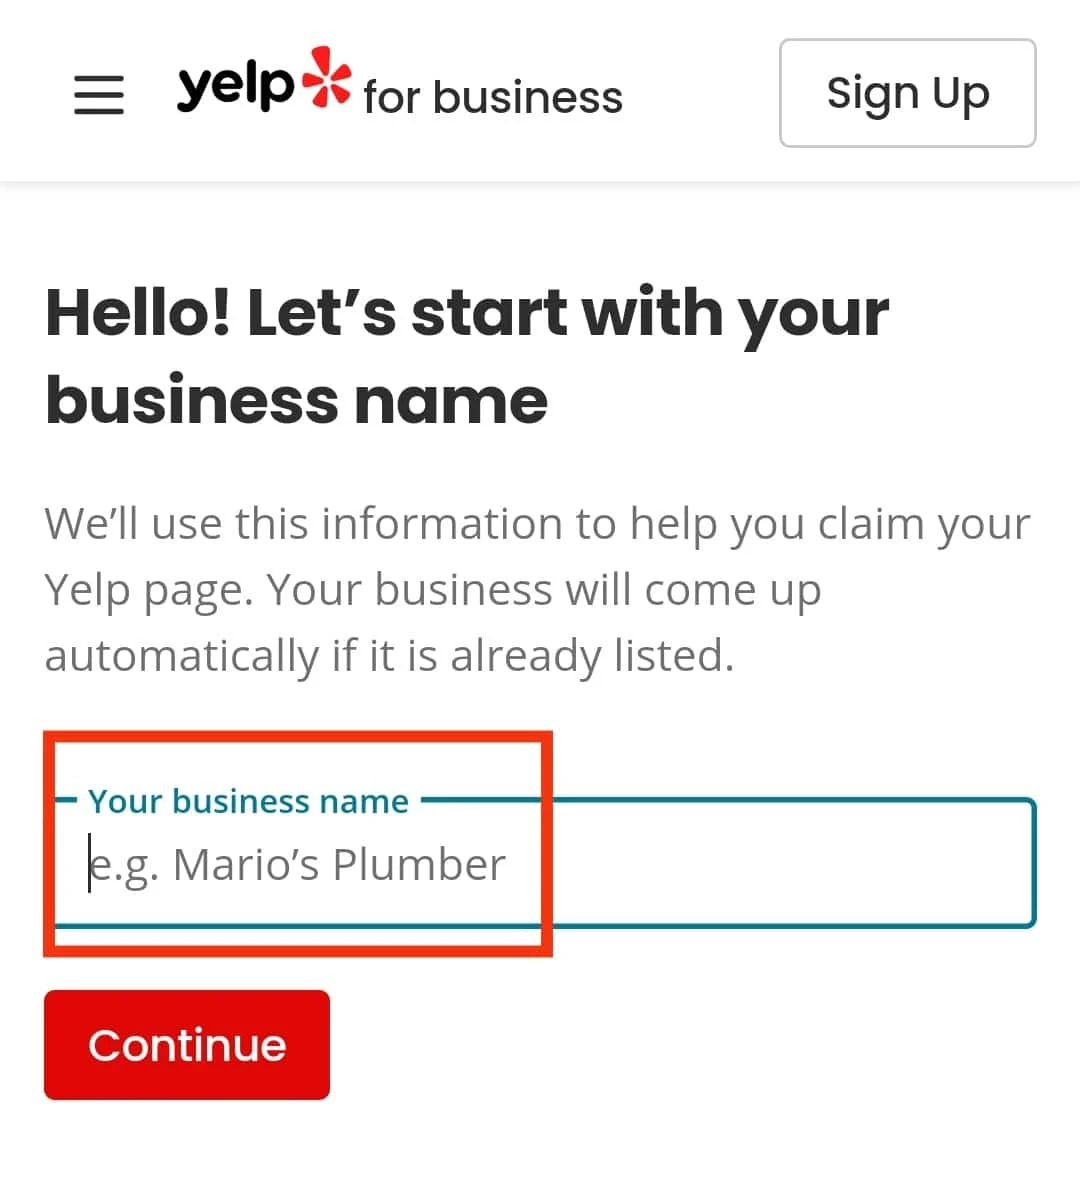 พิมพ์ชื่อธุรกิจของคุณ